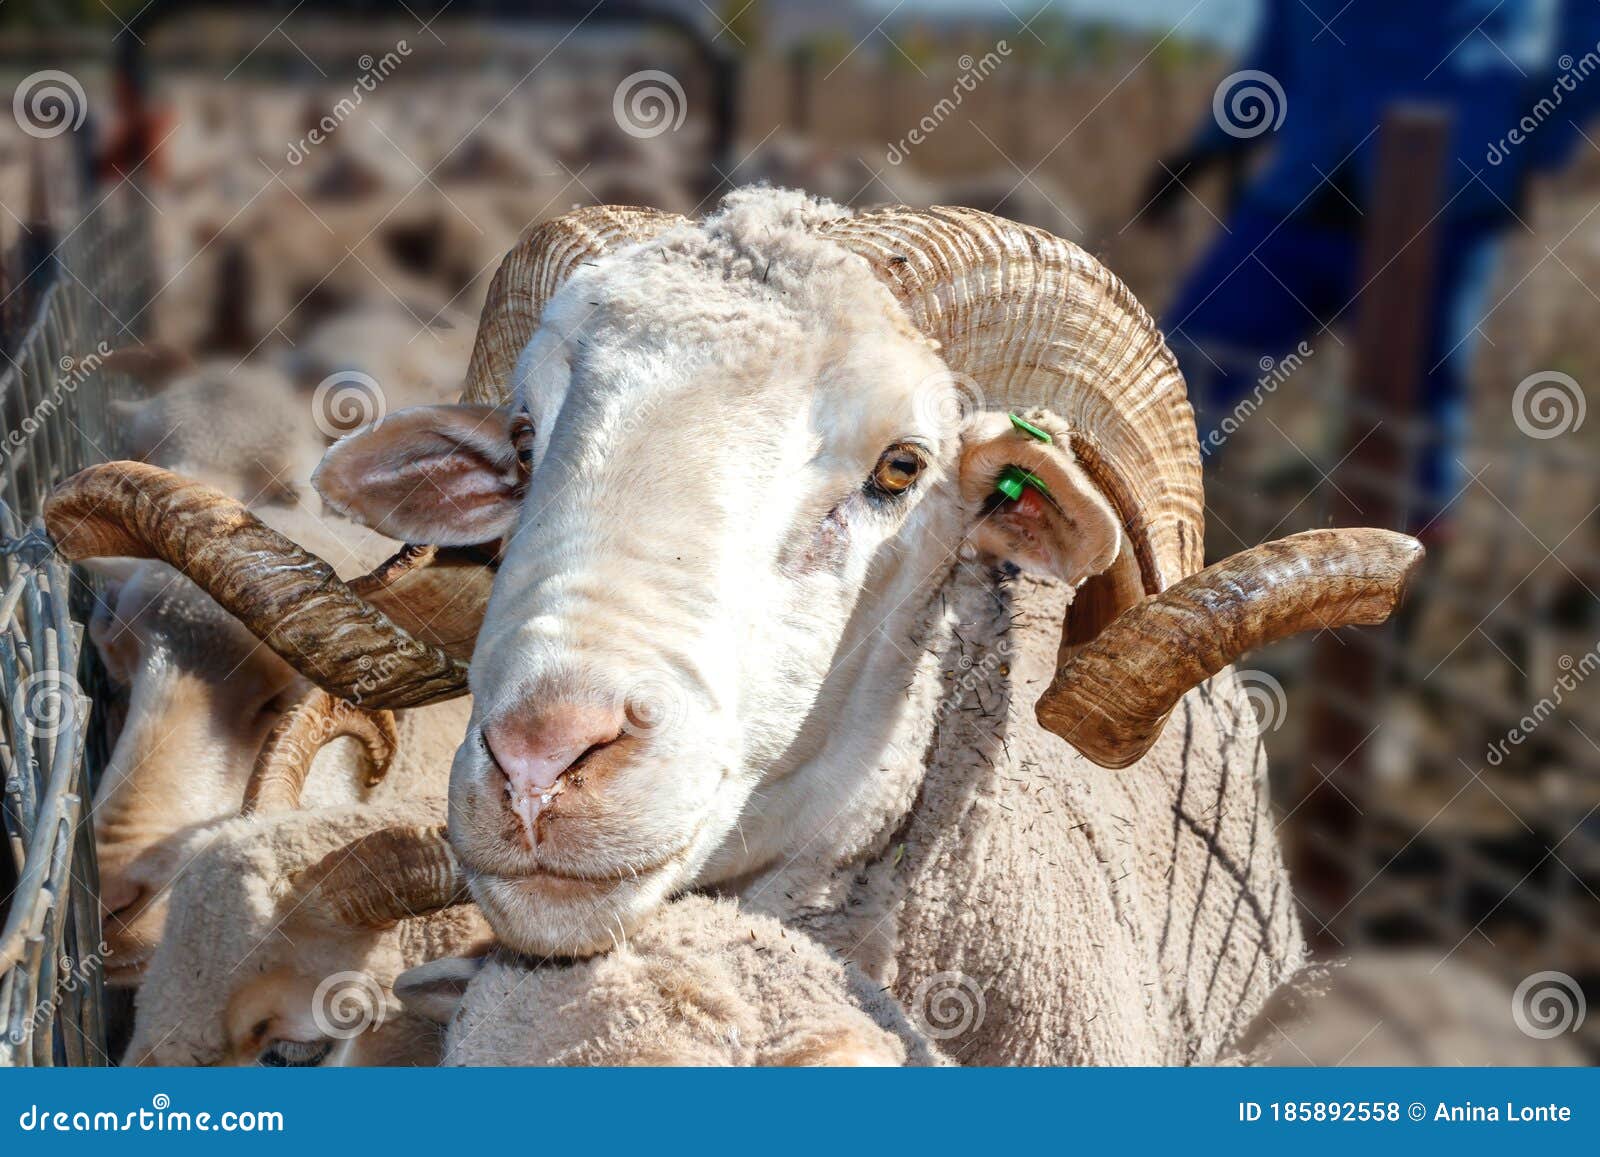 盘羊 Ovis ammon - 专题库 - 国家动物标本资源共享平台